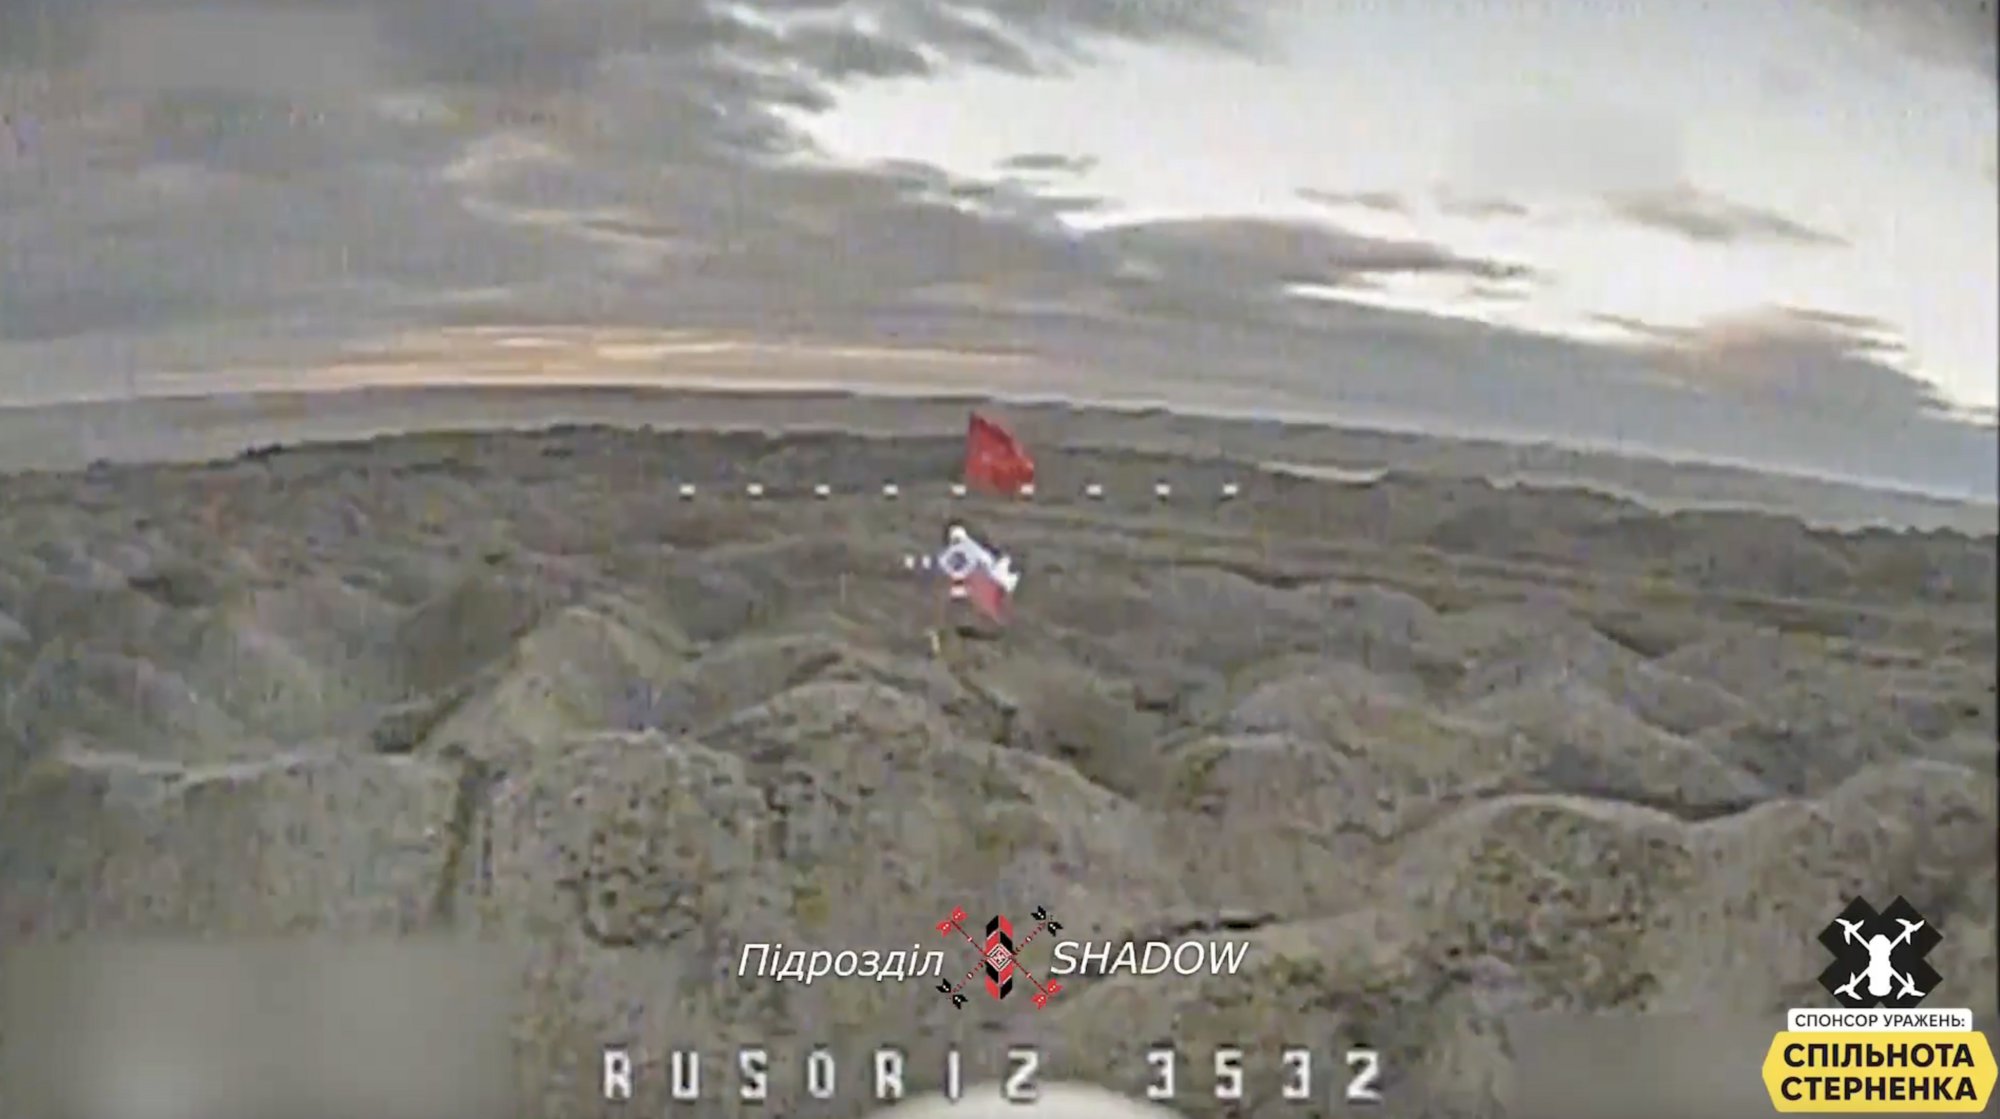 Провисіли недовго: воїни ЗСУ дроном знищили російські прапори на Авдіївському териконі. Відео